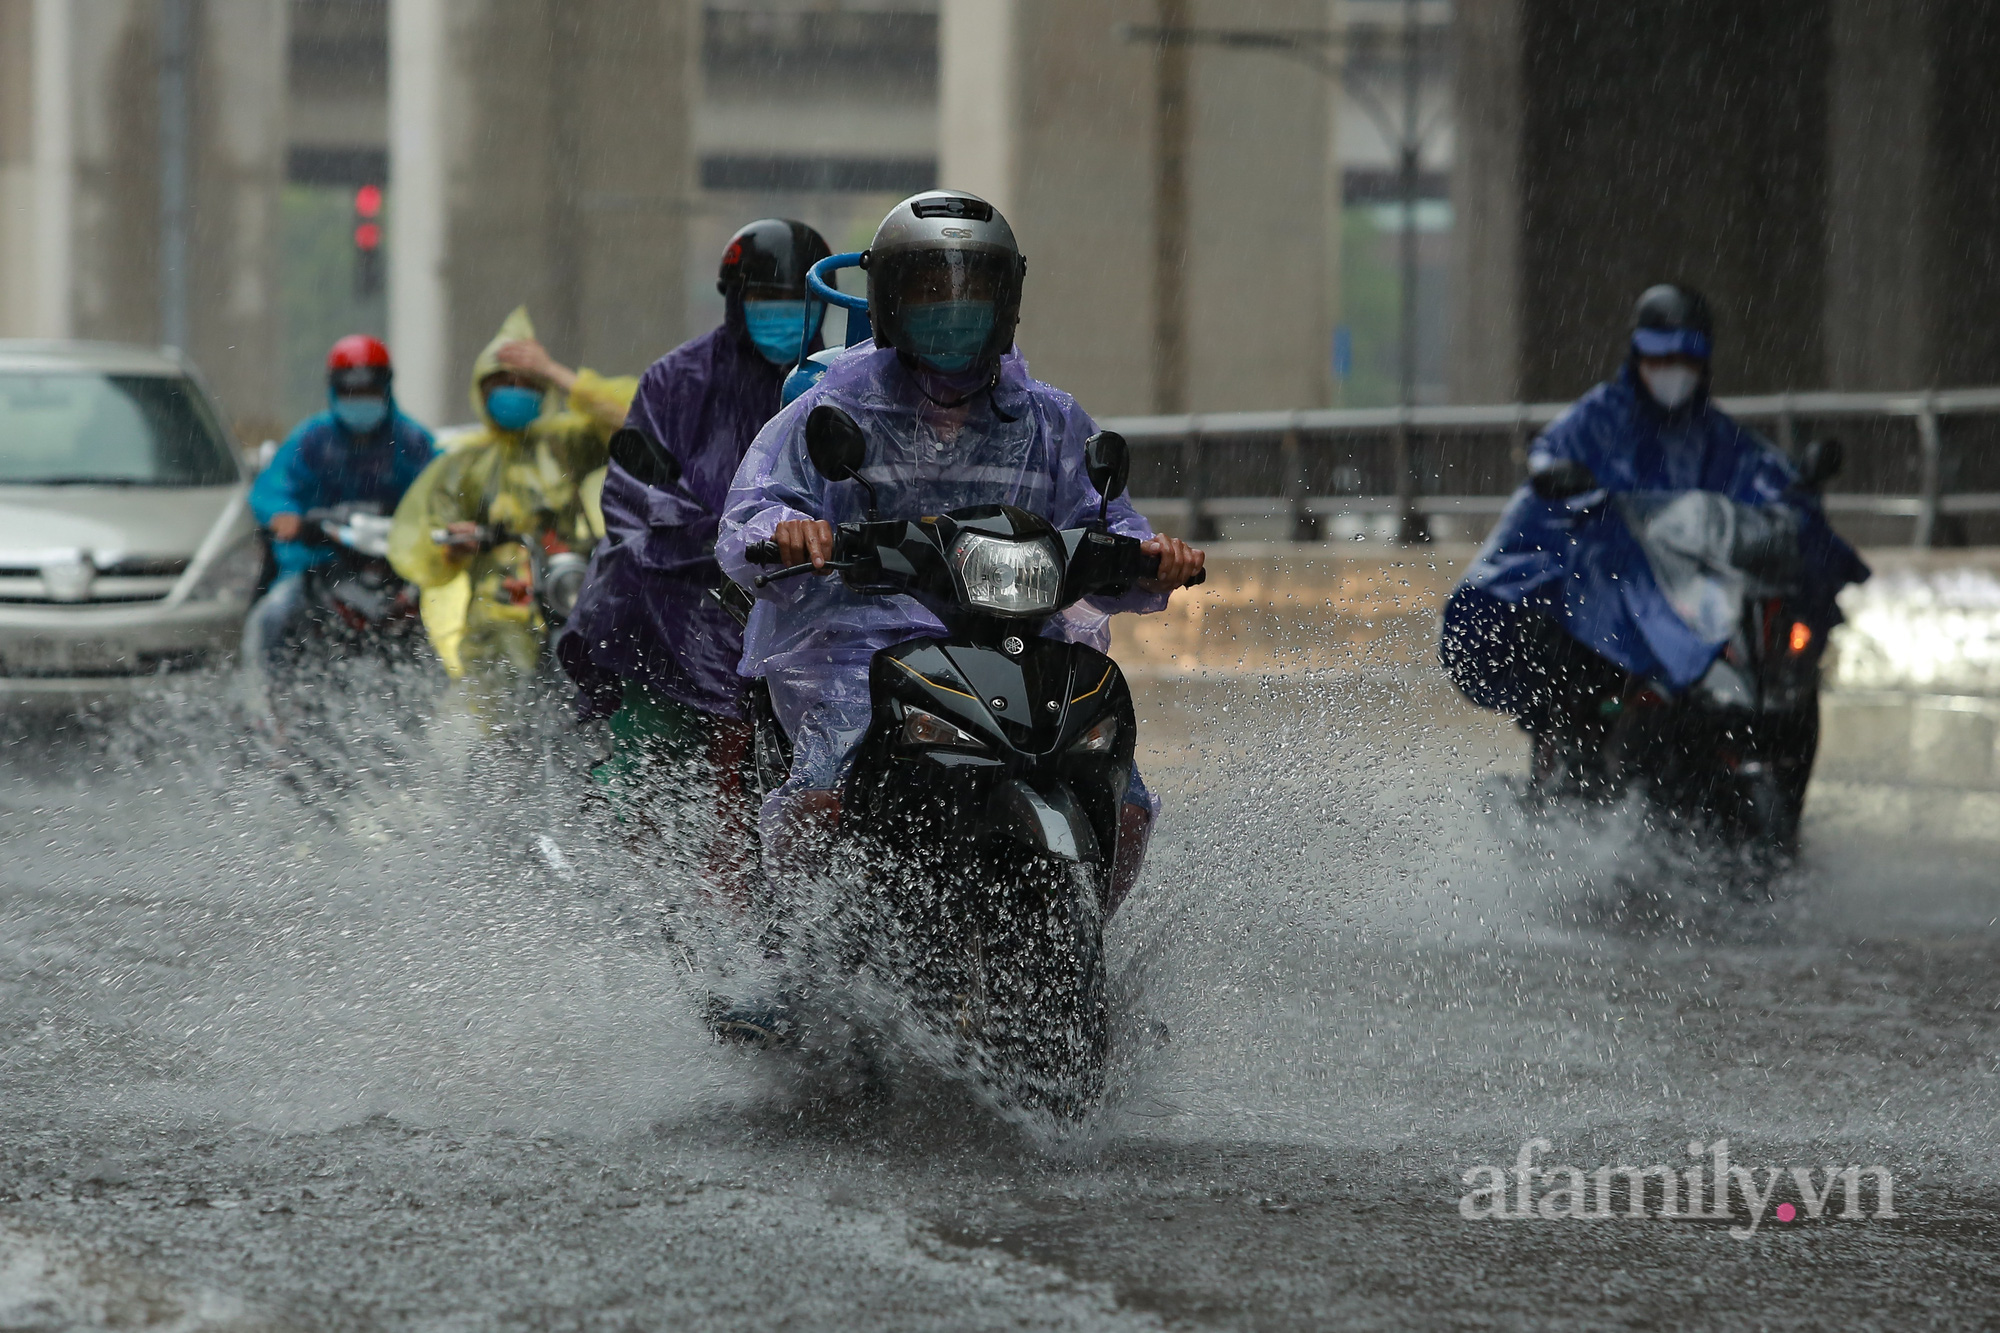 Đường phố ùn tắc, người Hà Nội vật lộn đi làm trong cơn mưa tầm tã - Ảnh 11.